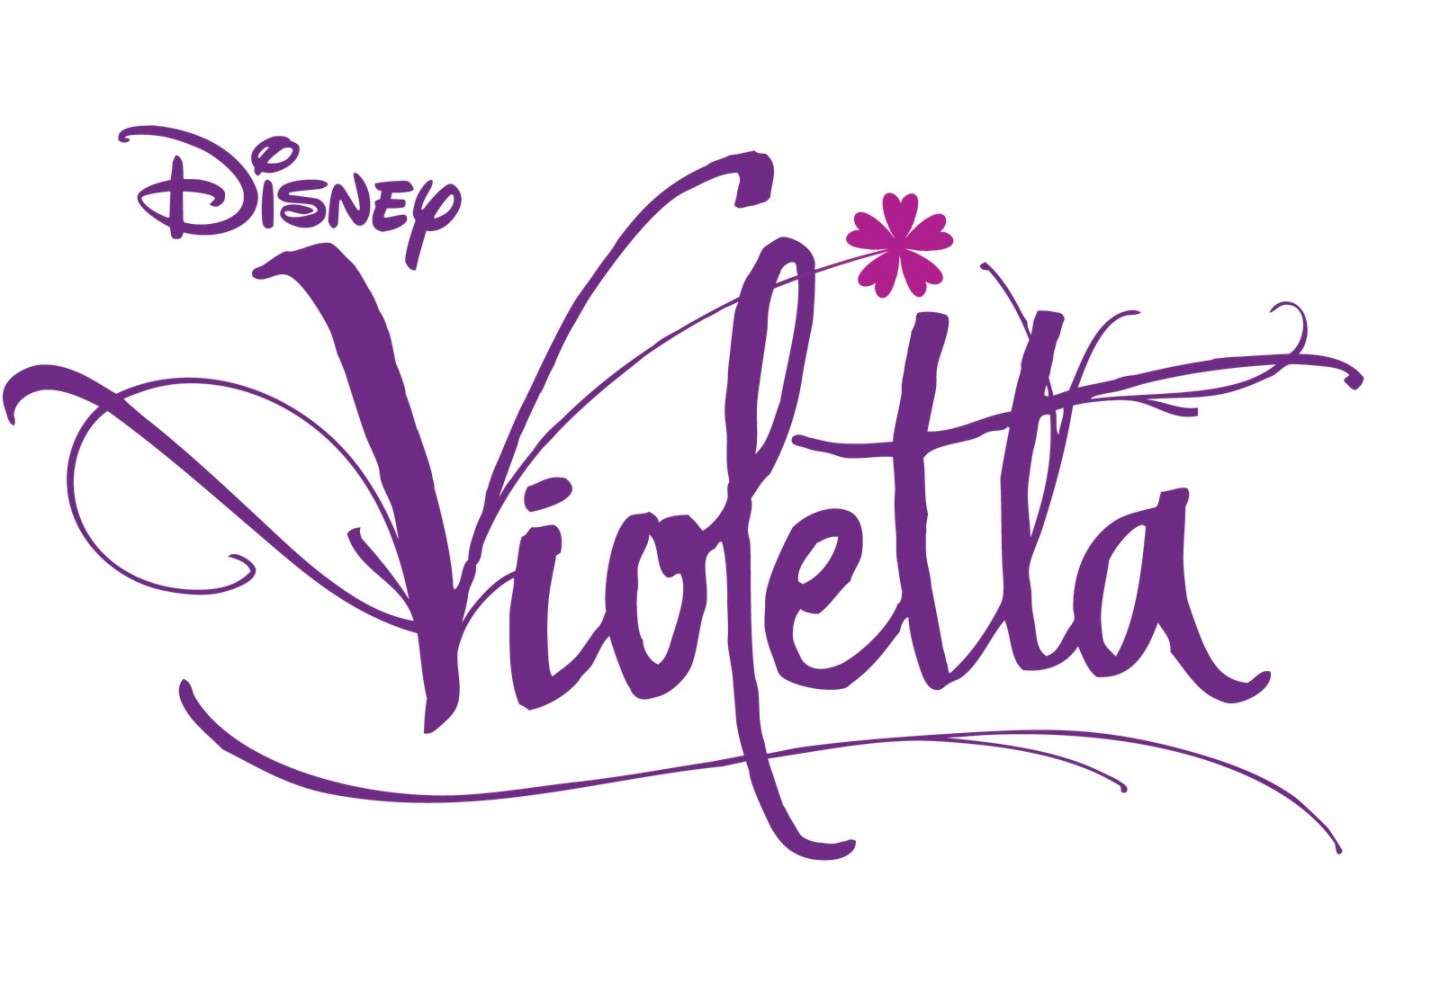 Accessori Violetta per l’inverno 2015